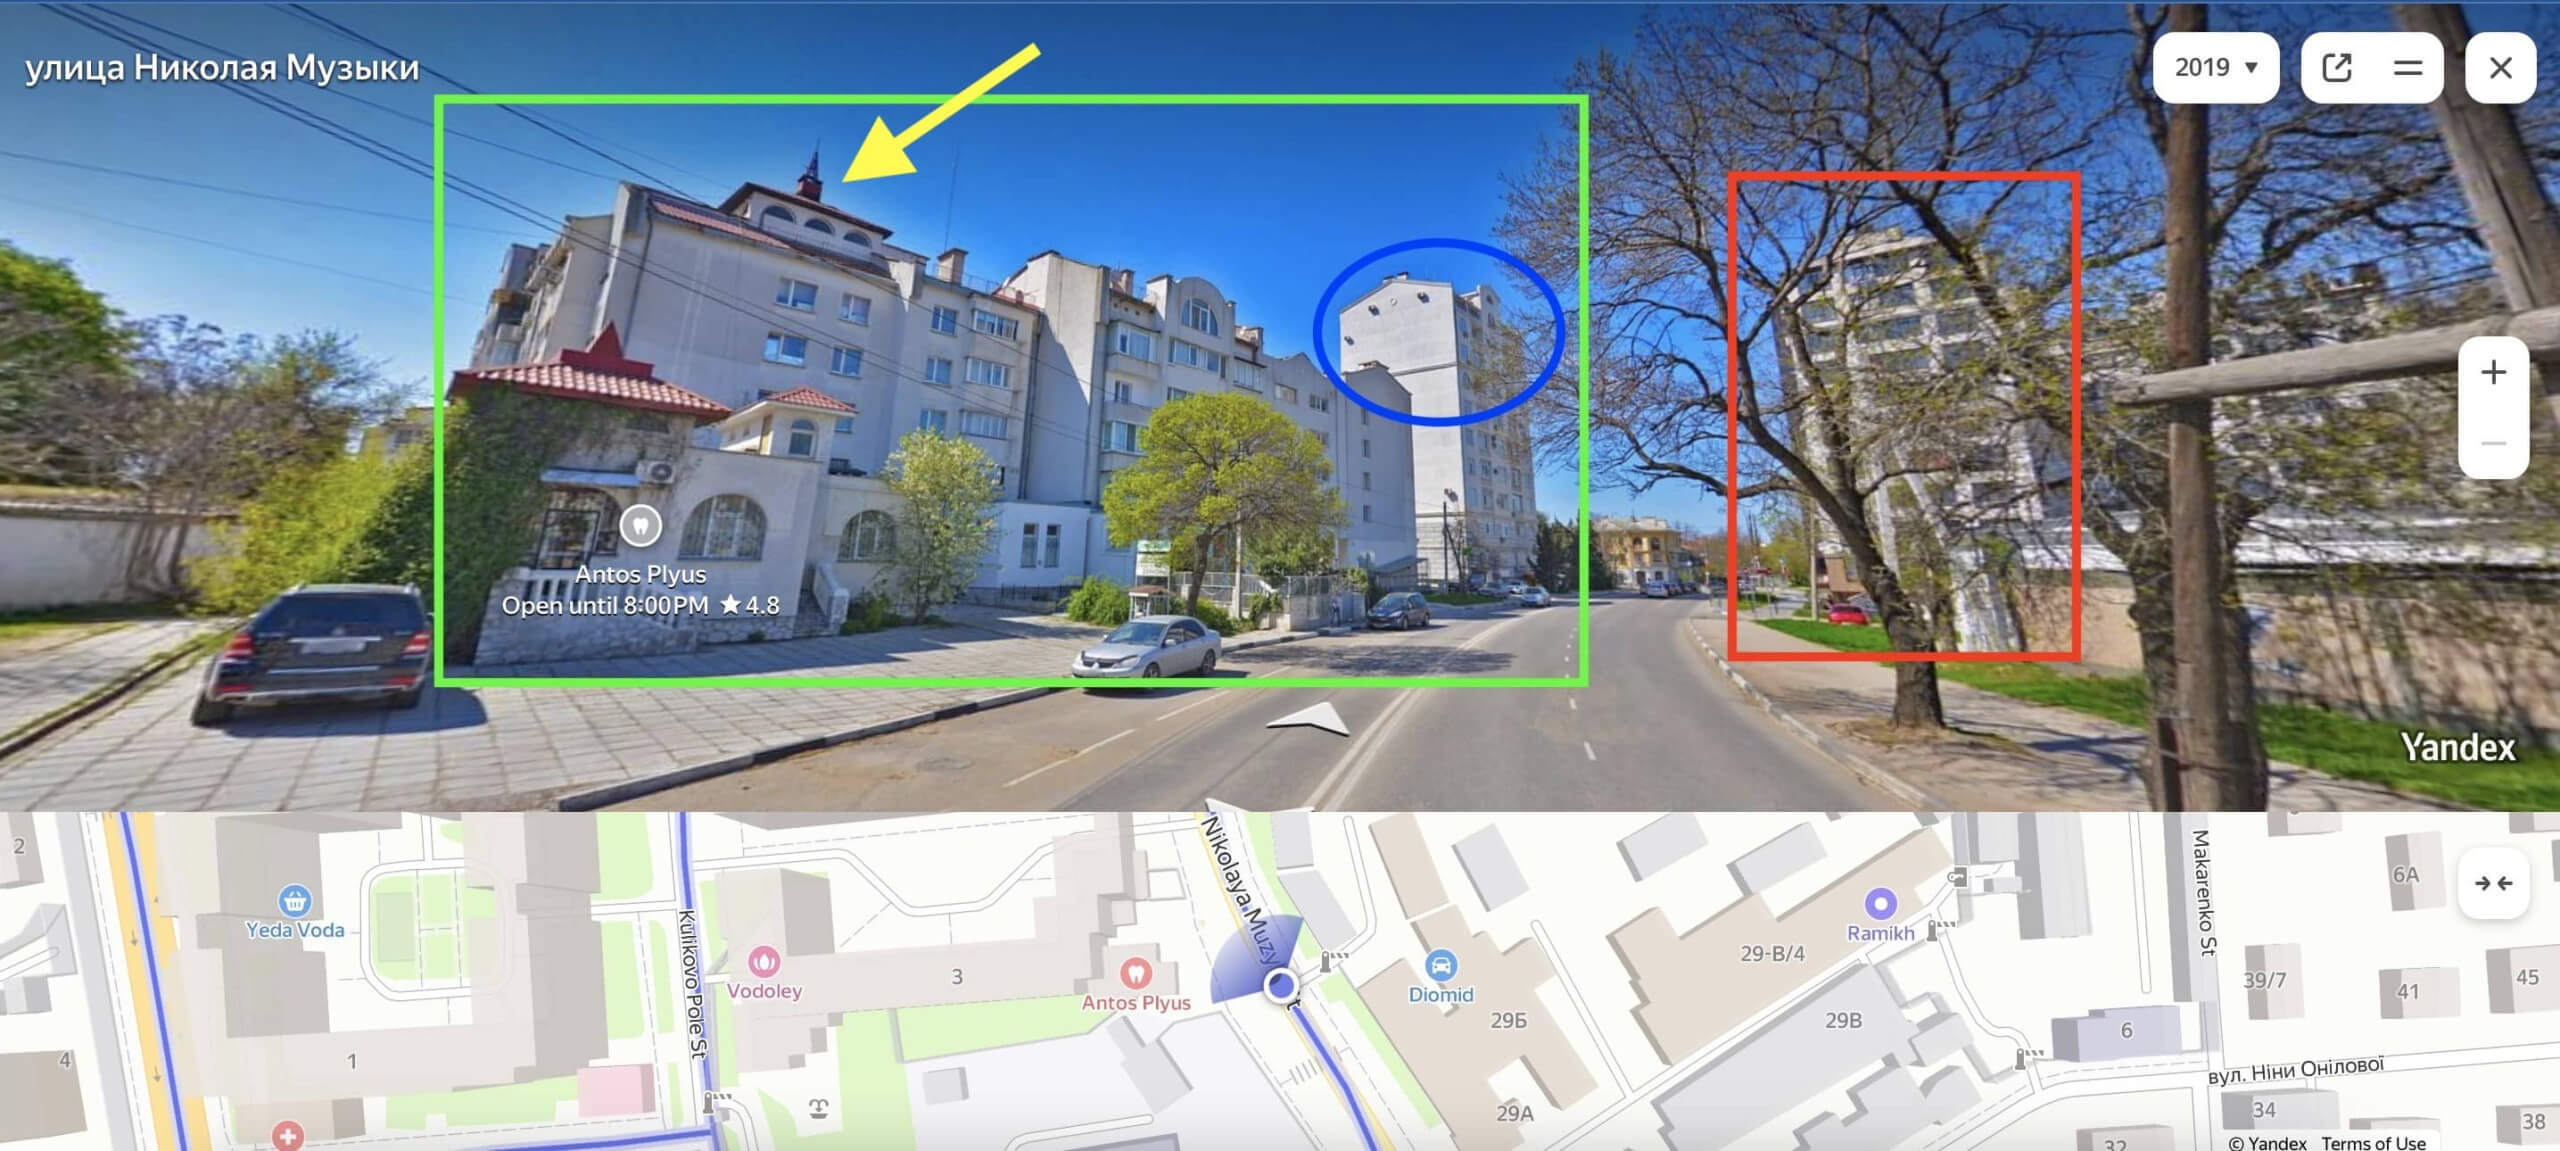 Yandex Maps zeigt dieselben Gebäude wie das Video